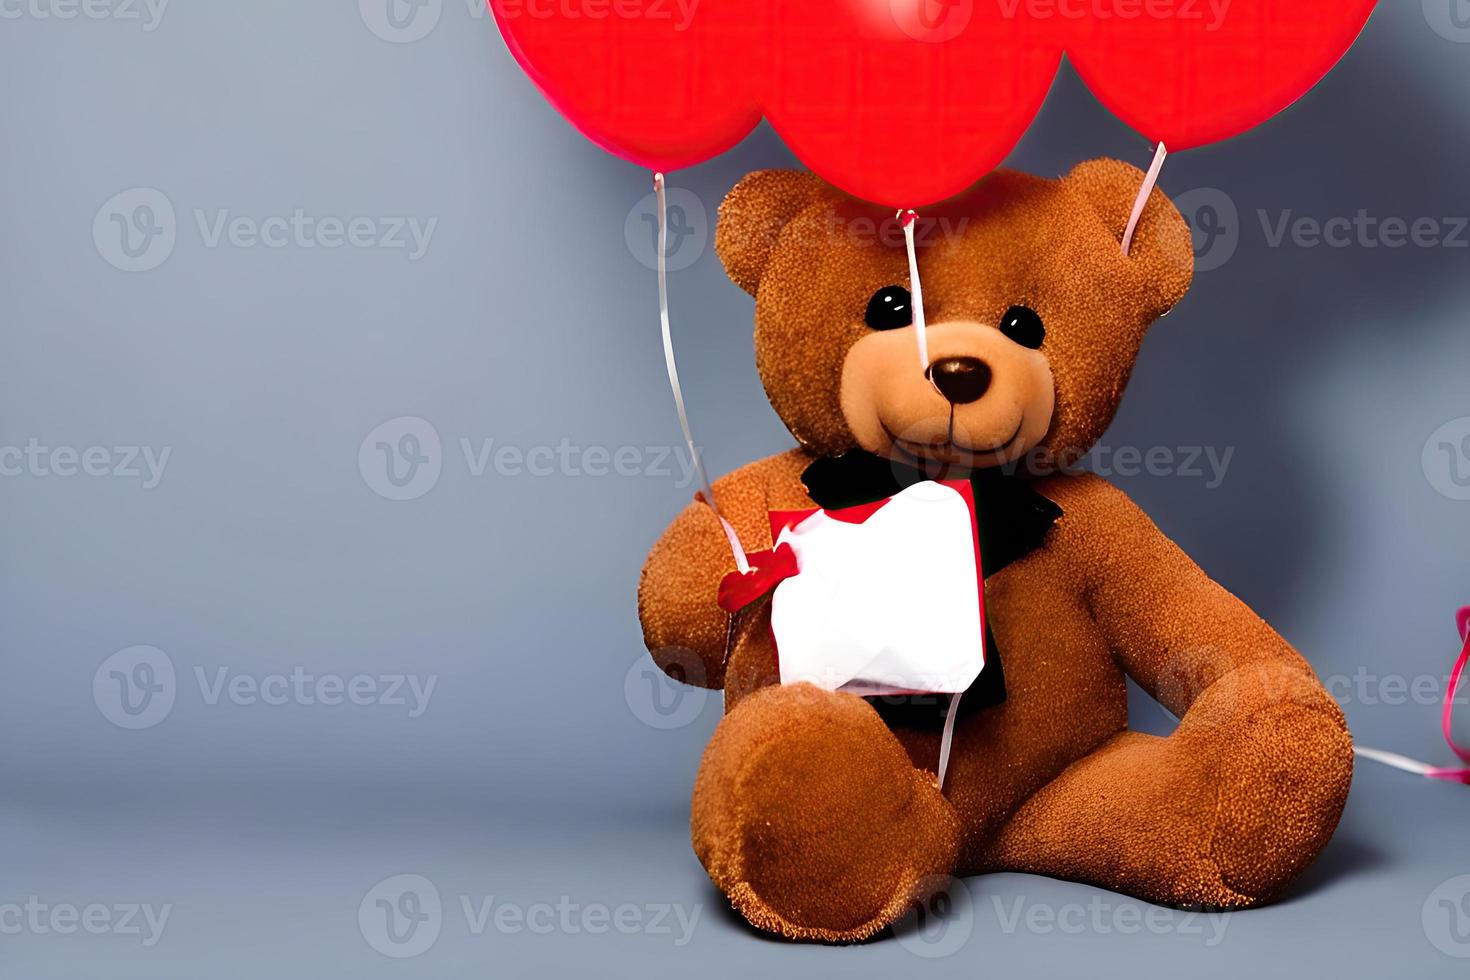 festa surpresa com ursinho de pelúcia e balão vermelho foto